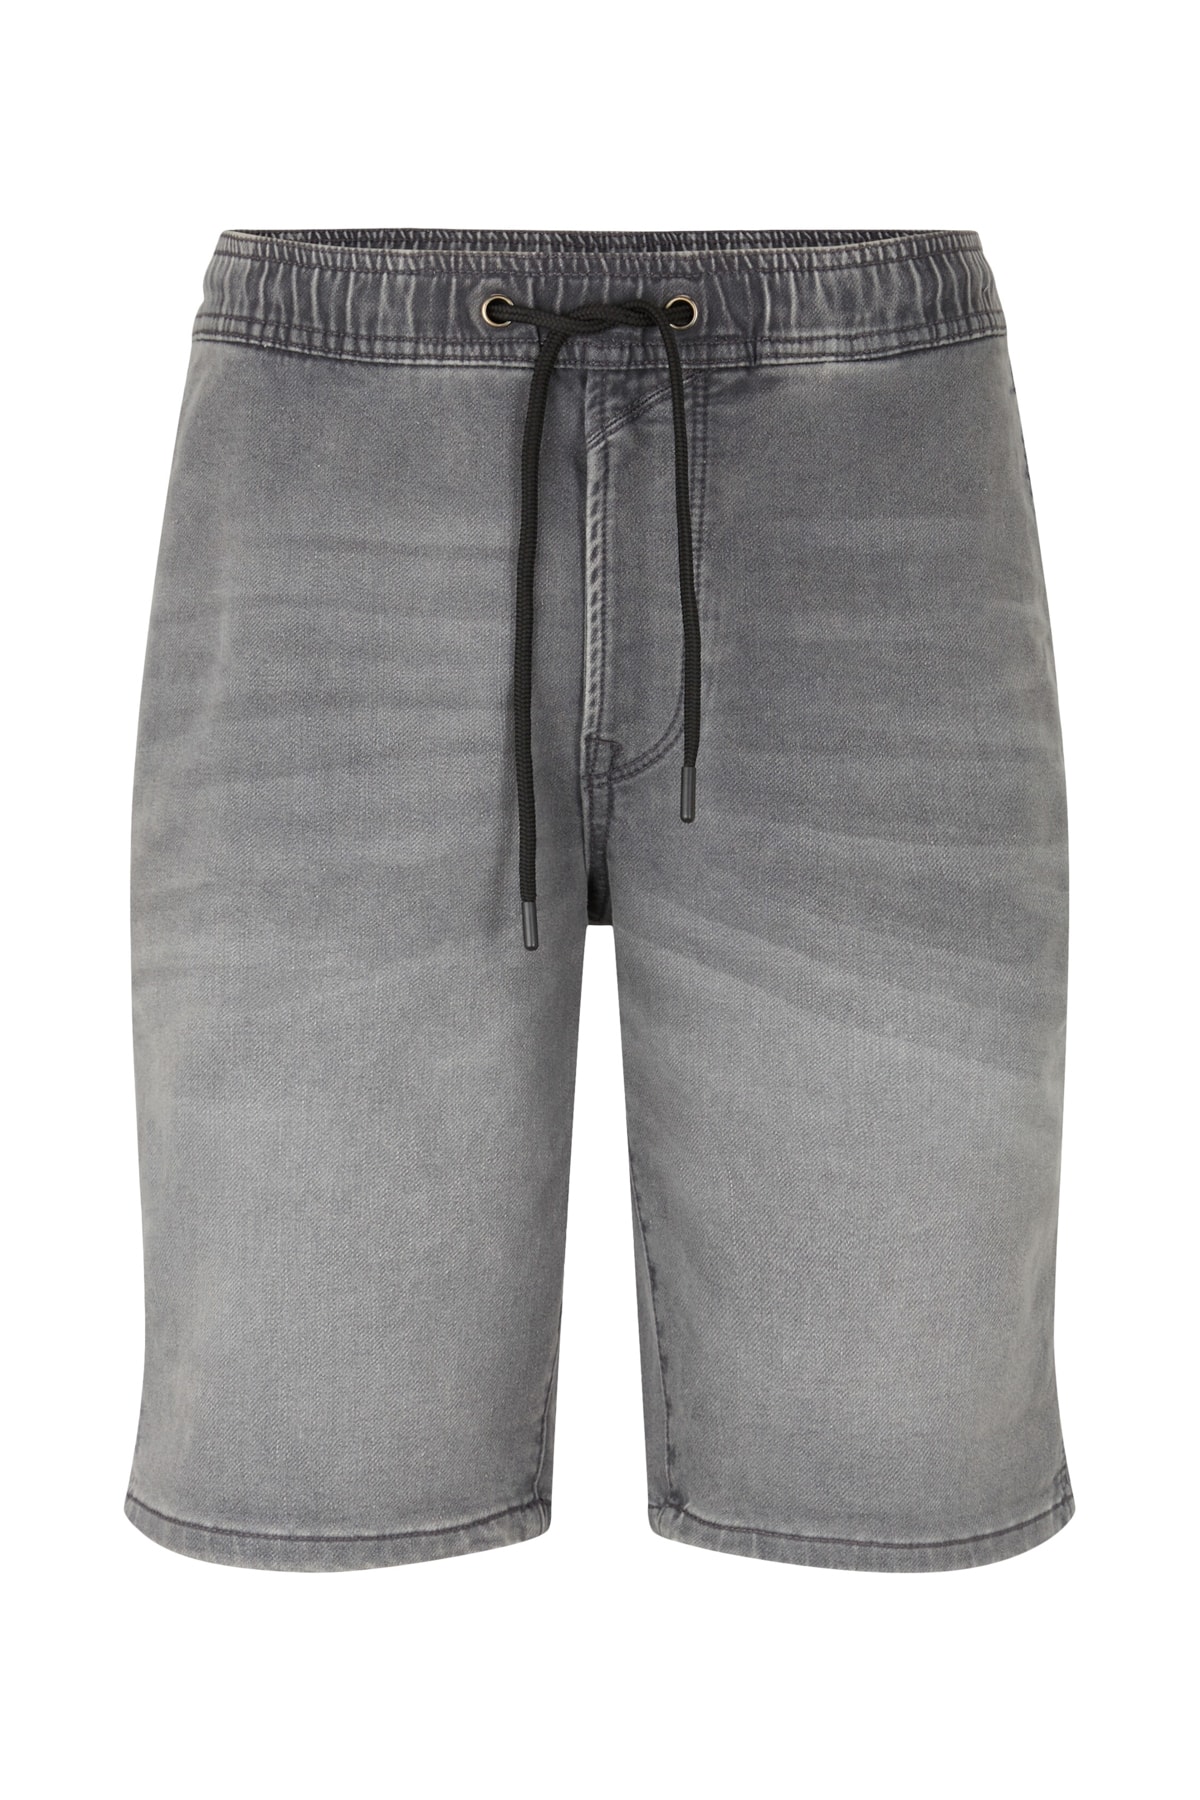 Джинсы - Серые - Прямые Tom Tailor Denim, серый джинсы серые прямые tom tailor denim серый